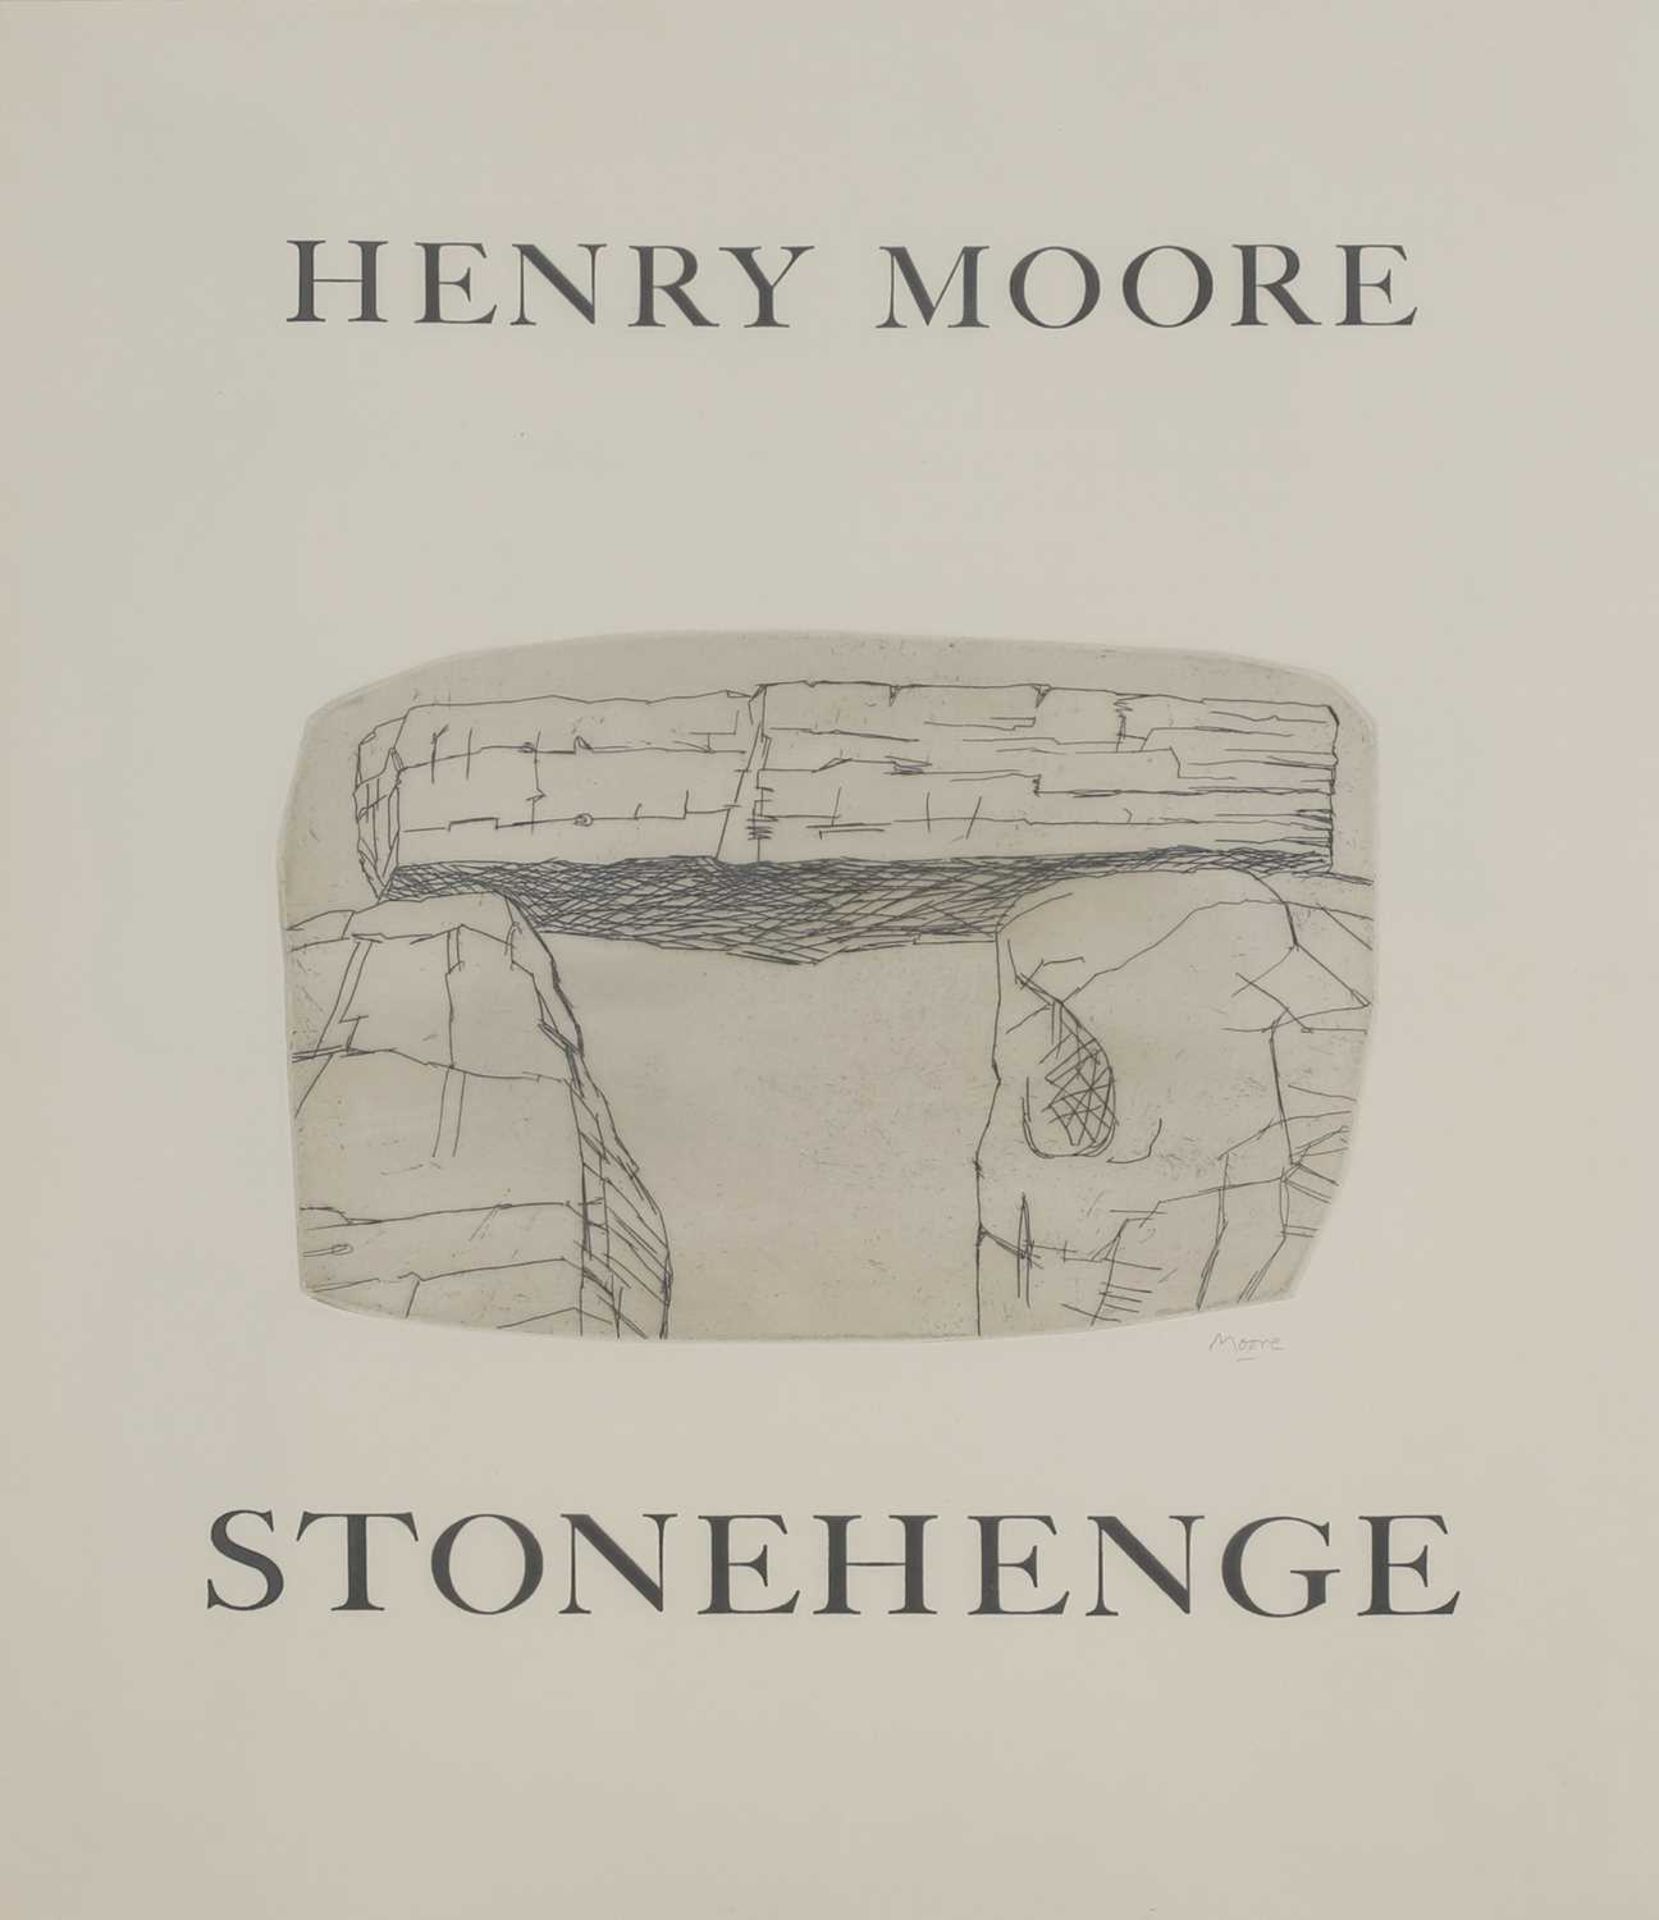 Henry Moore OM CH FBA (1898-1986)